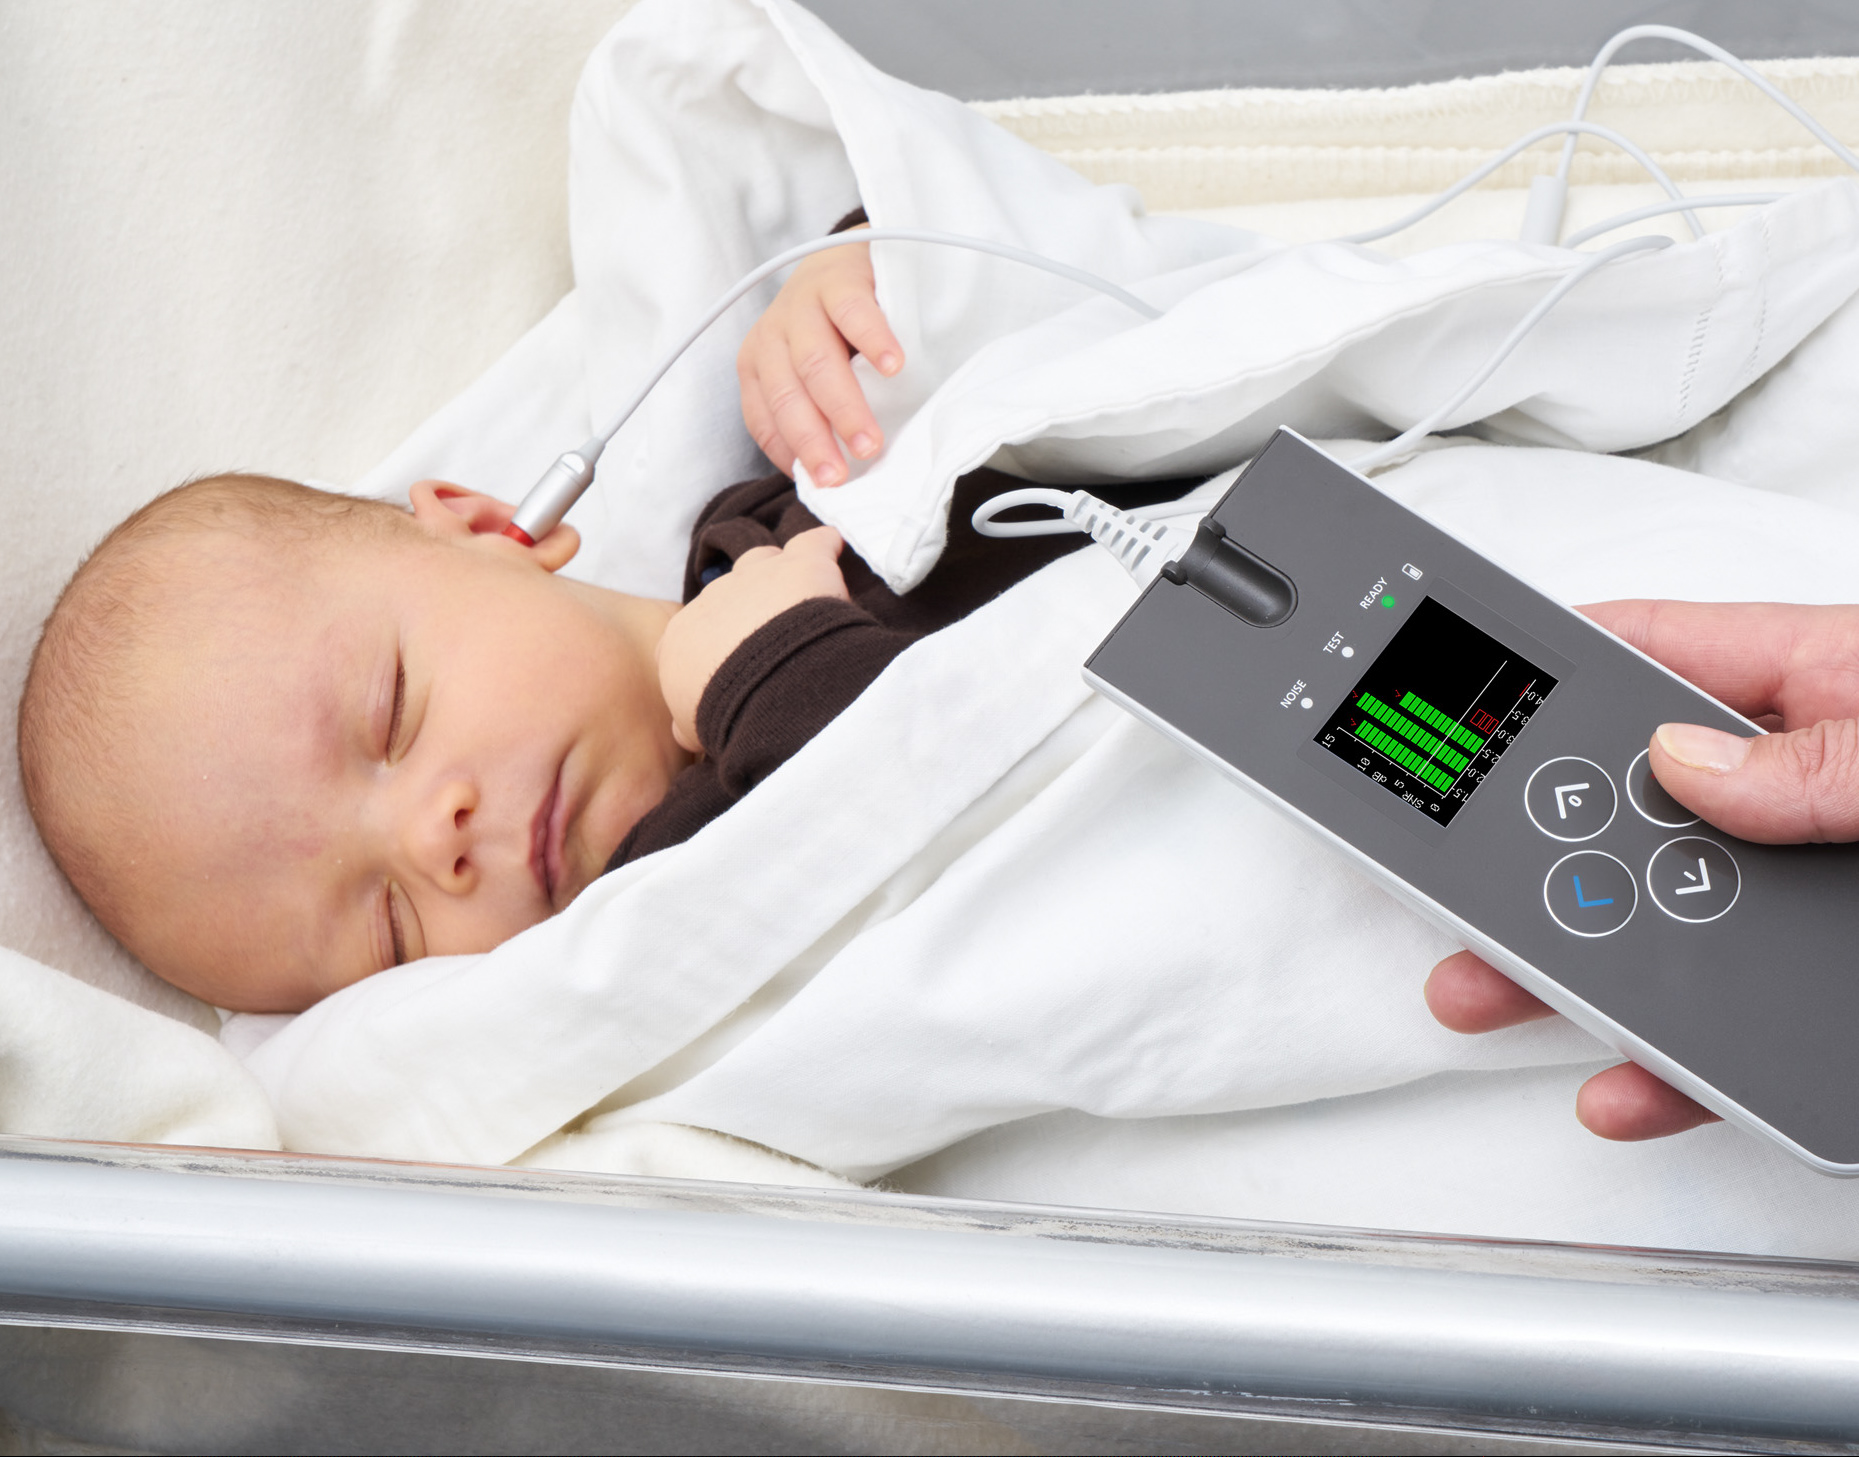 Франківський медуніверситет отримав апарат для виявлення вад слуху в новонароджених